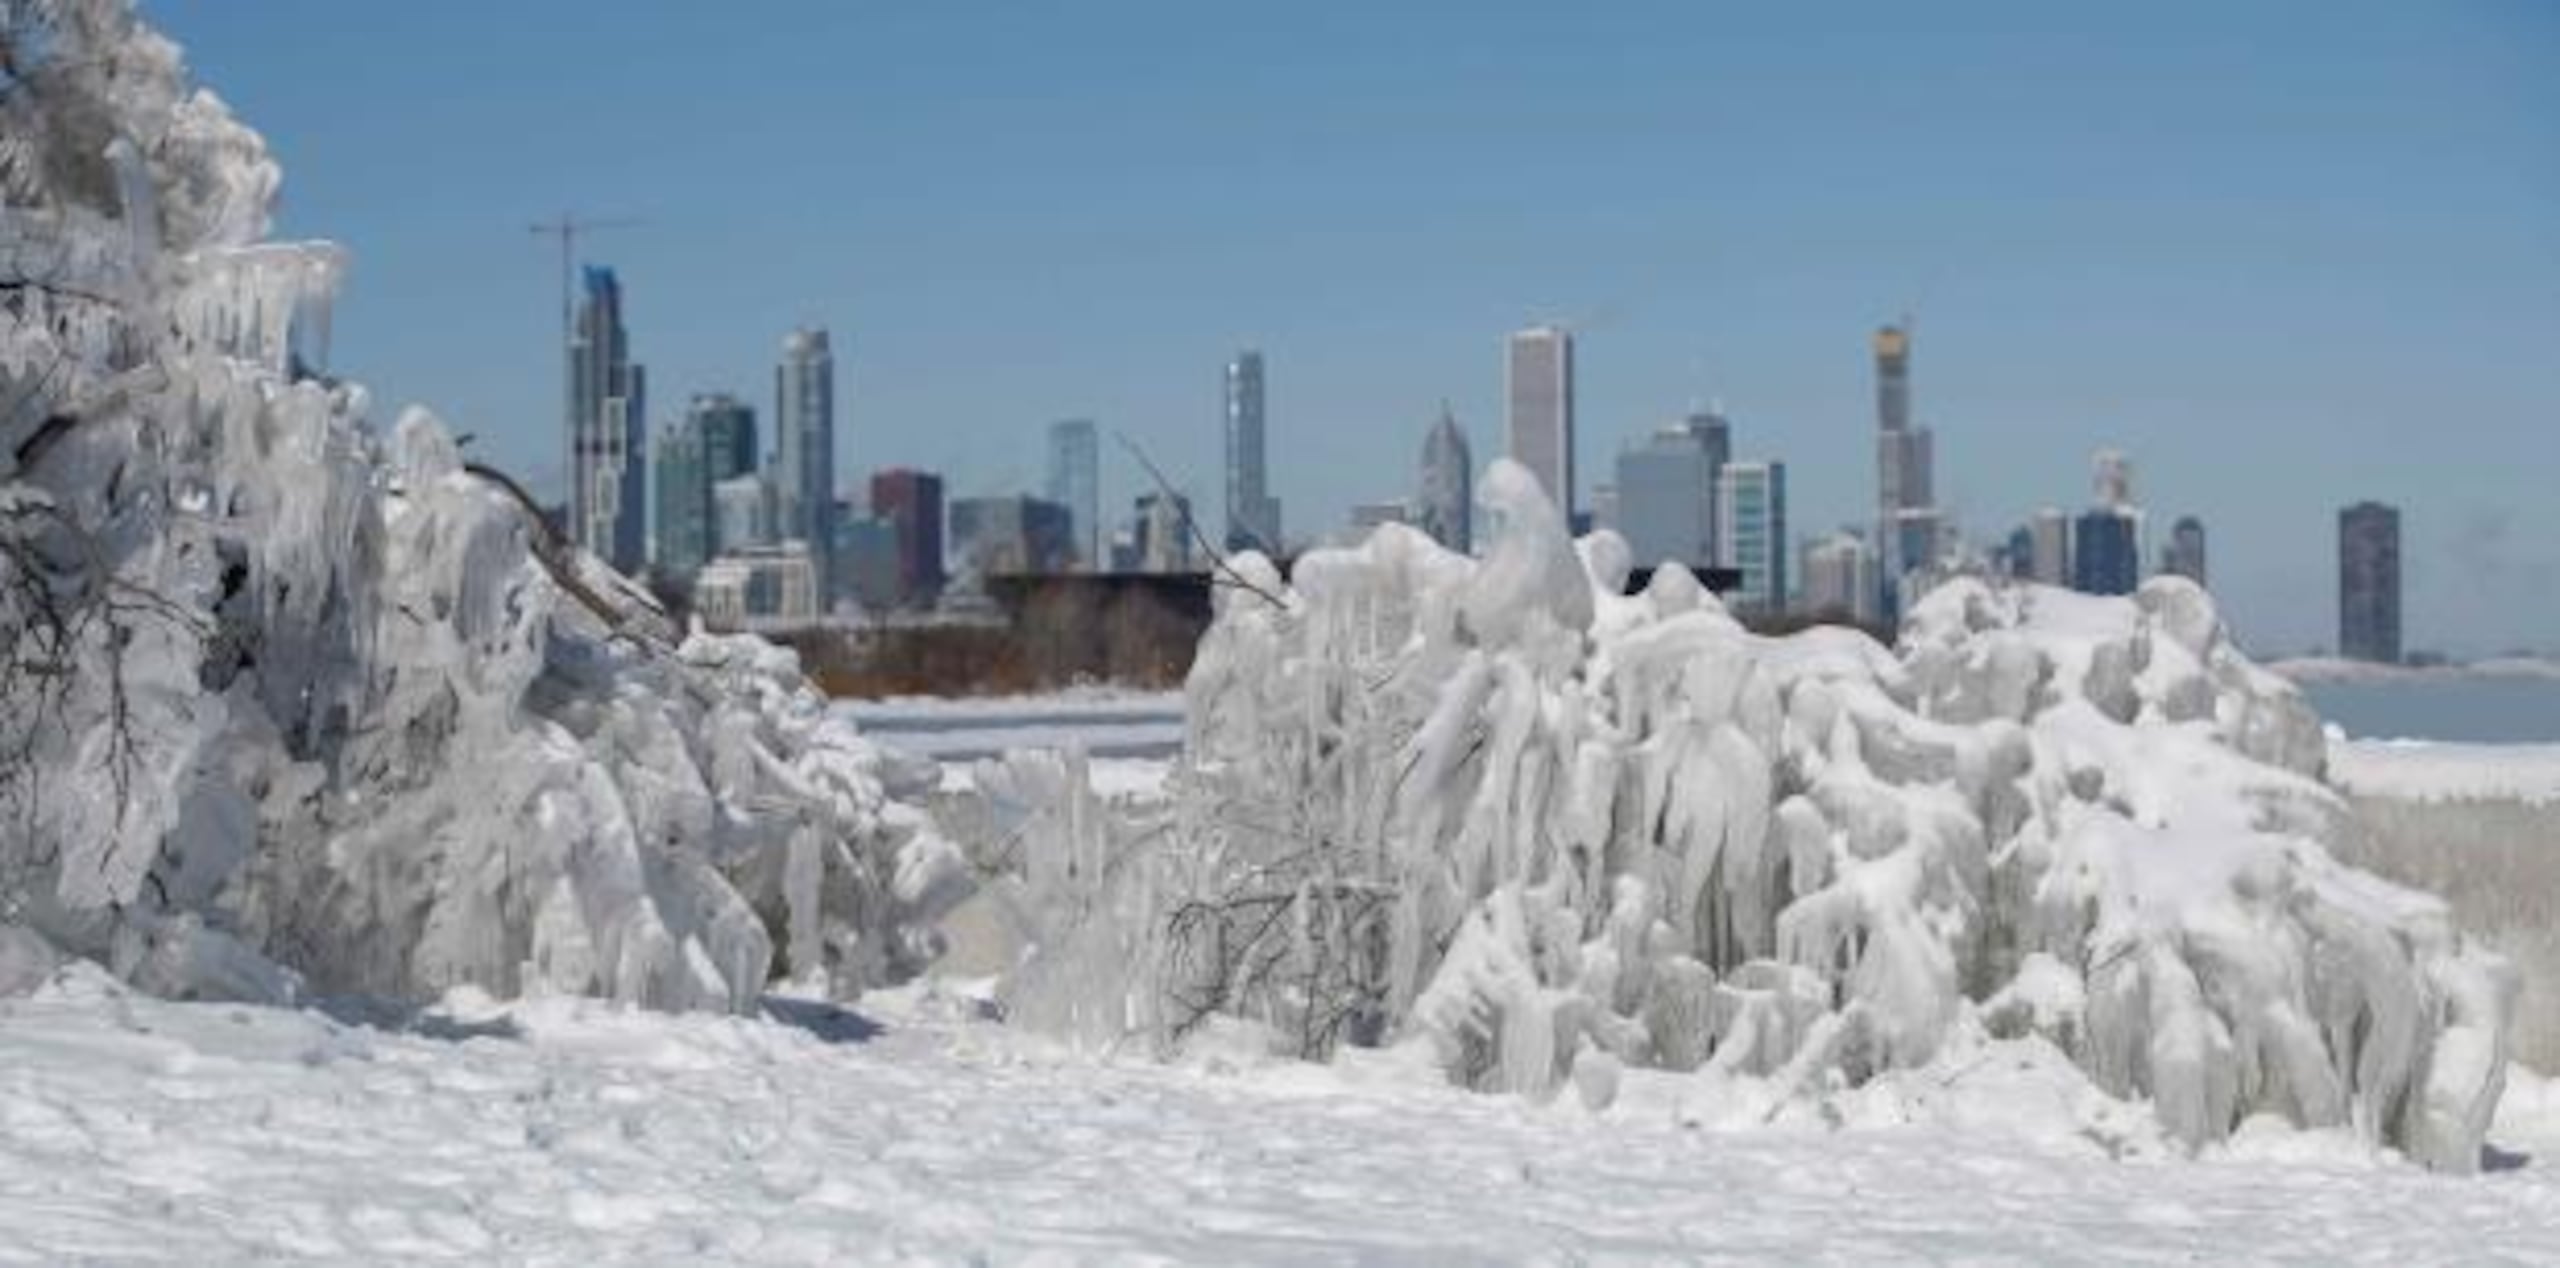 El frío continuaba hoy con registros árticos en Chicago, con un pronóstico de 13 grados Fahrenheit bajo cero durante el día. (EFE)